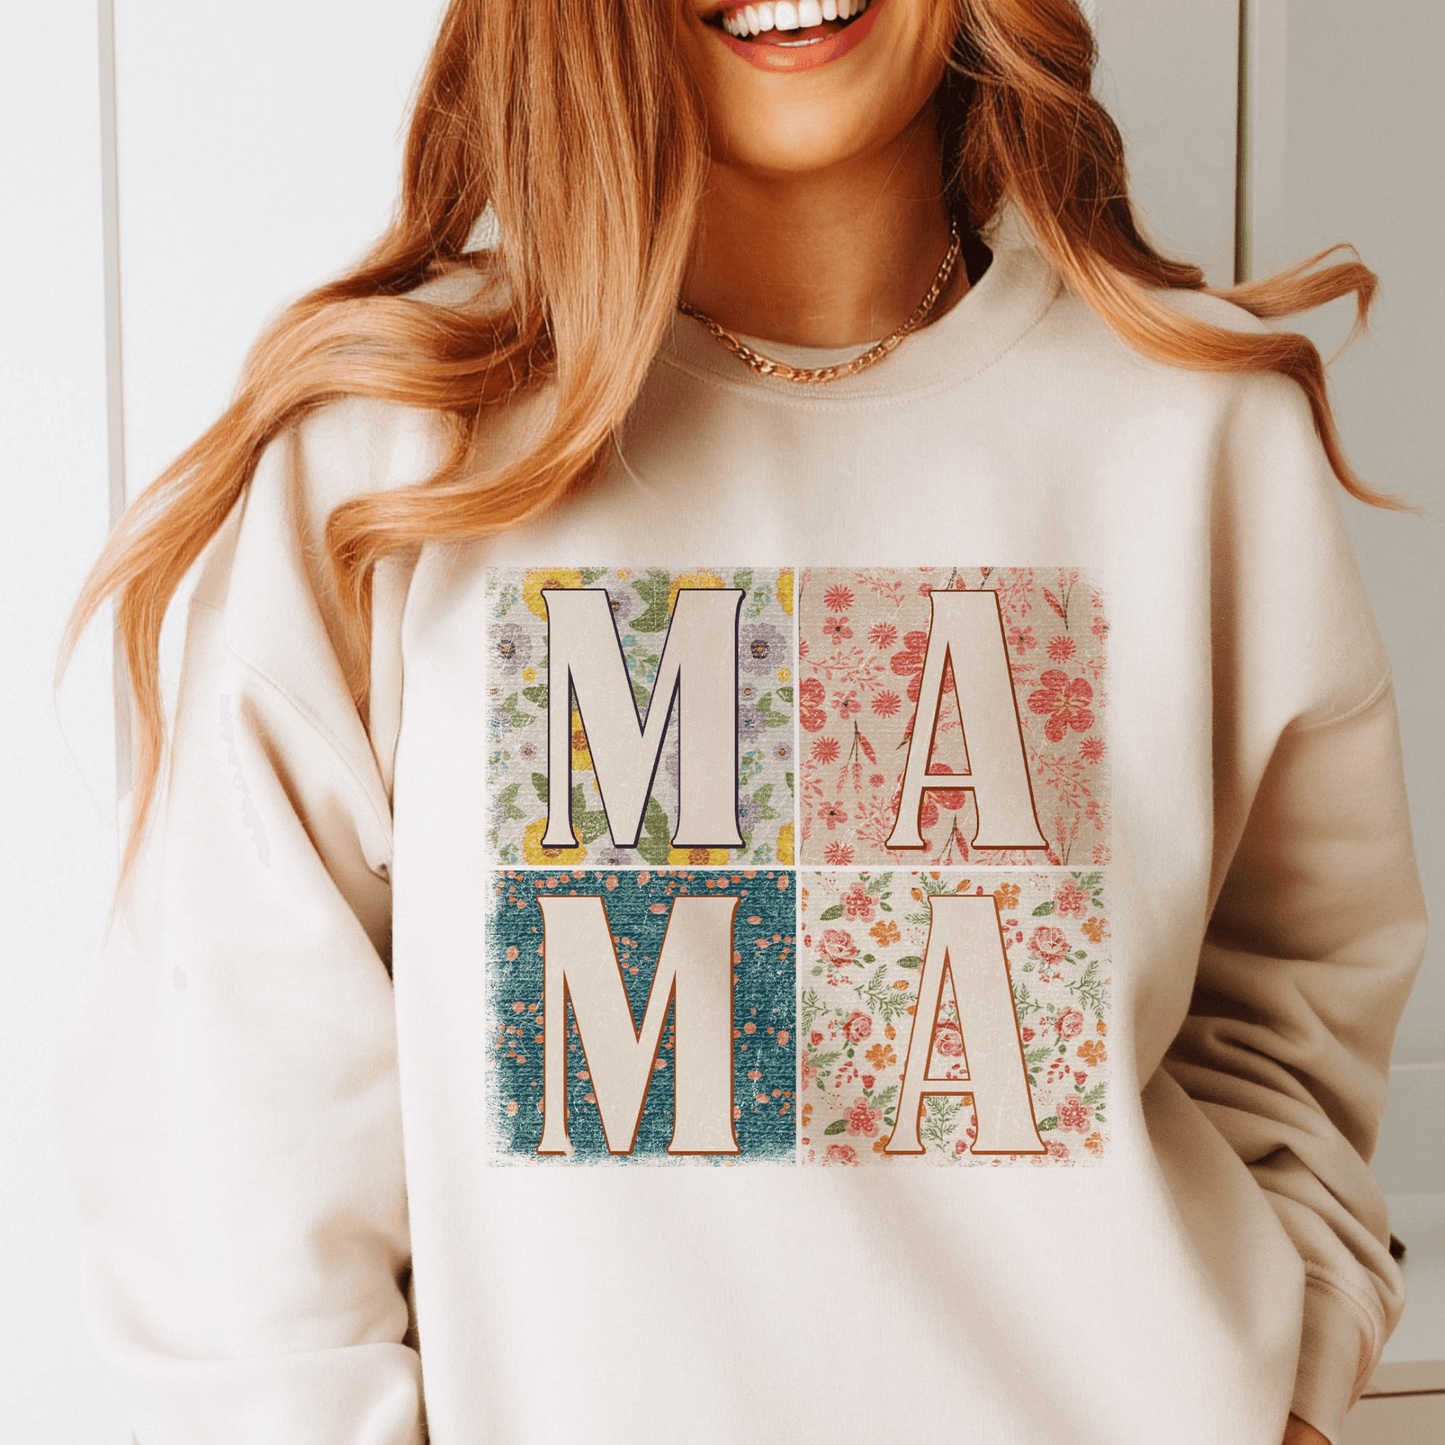 Blumenmuster Mama-Sweatshirt - Für stilsichere Mütter - GiftHaus